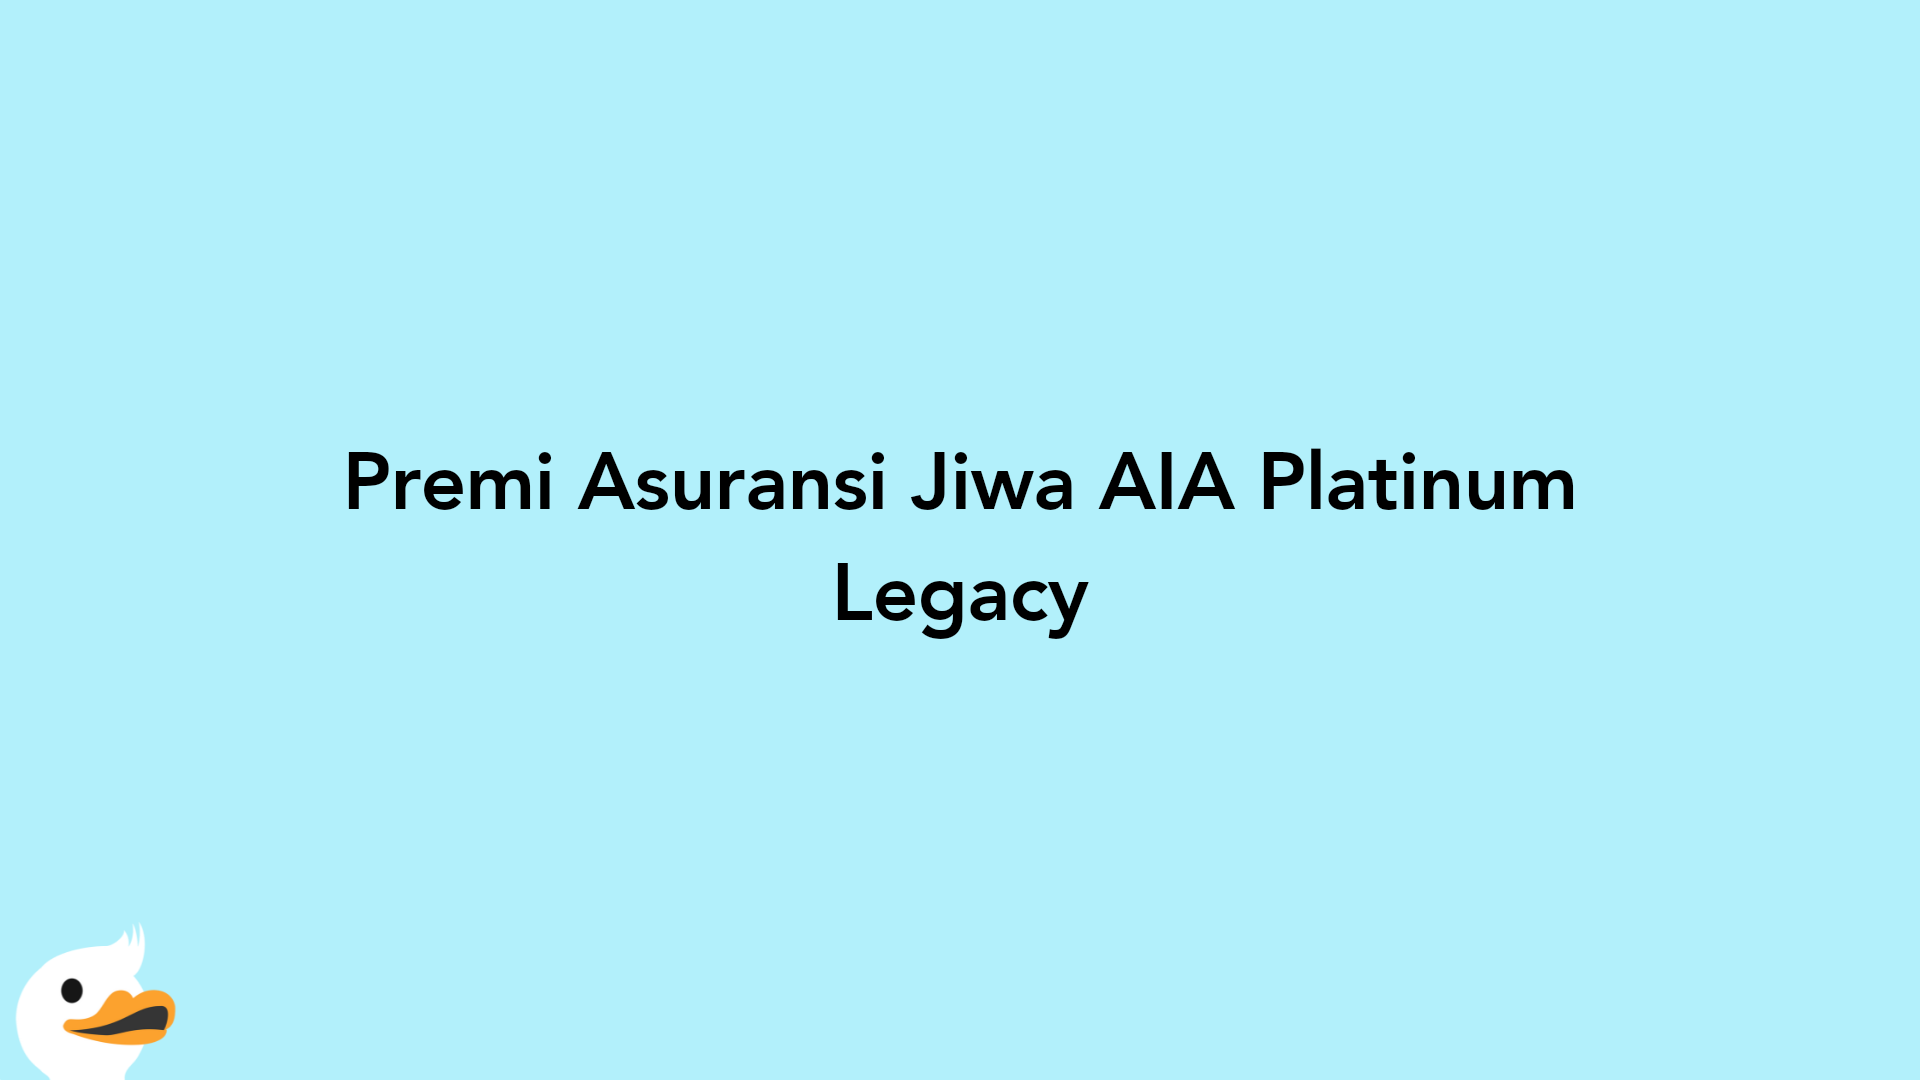 Premi Asuransi Jiwa AIA Platinum Legacy